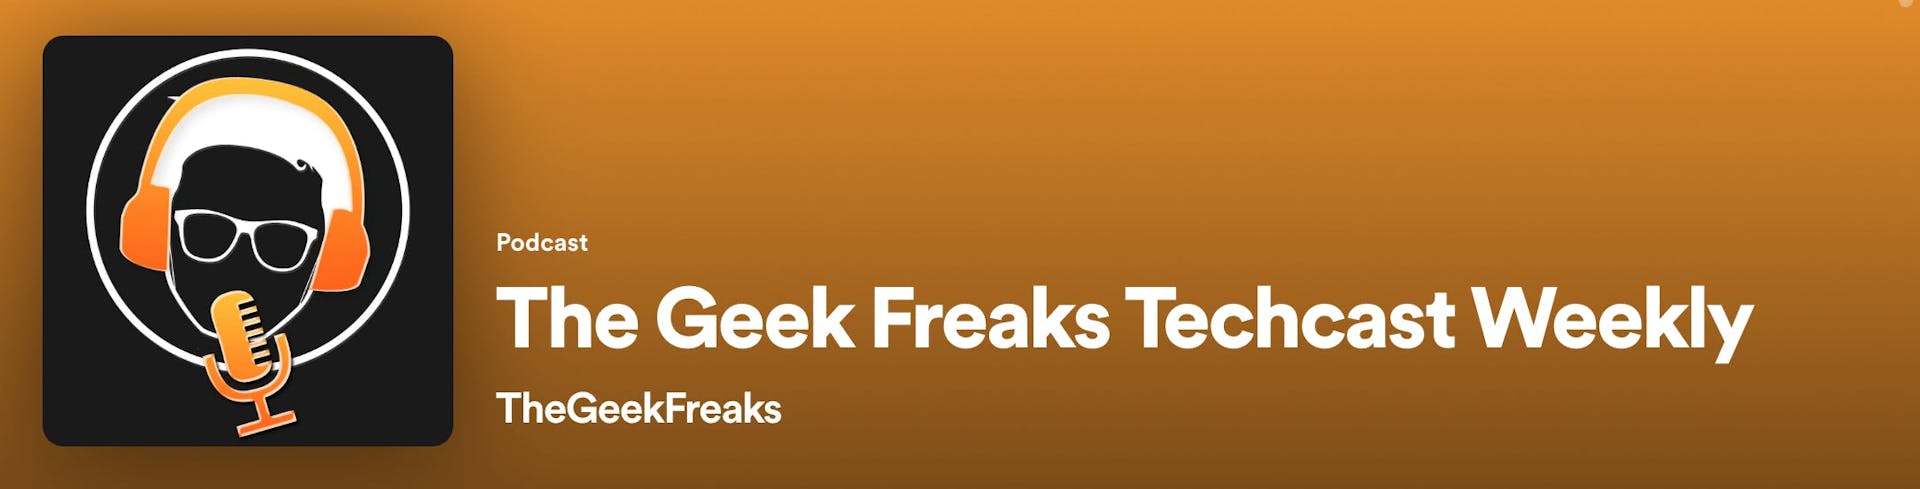 The Geek Freaks Techcast Weekly Banner